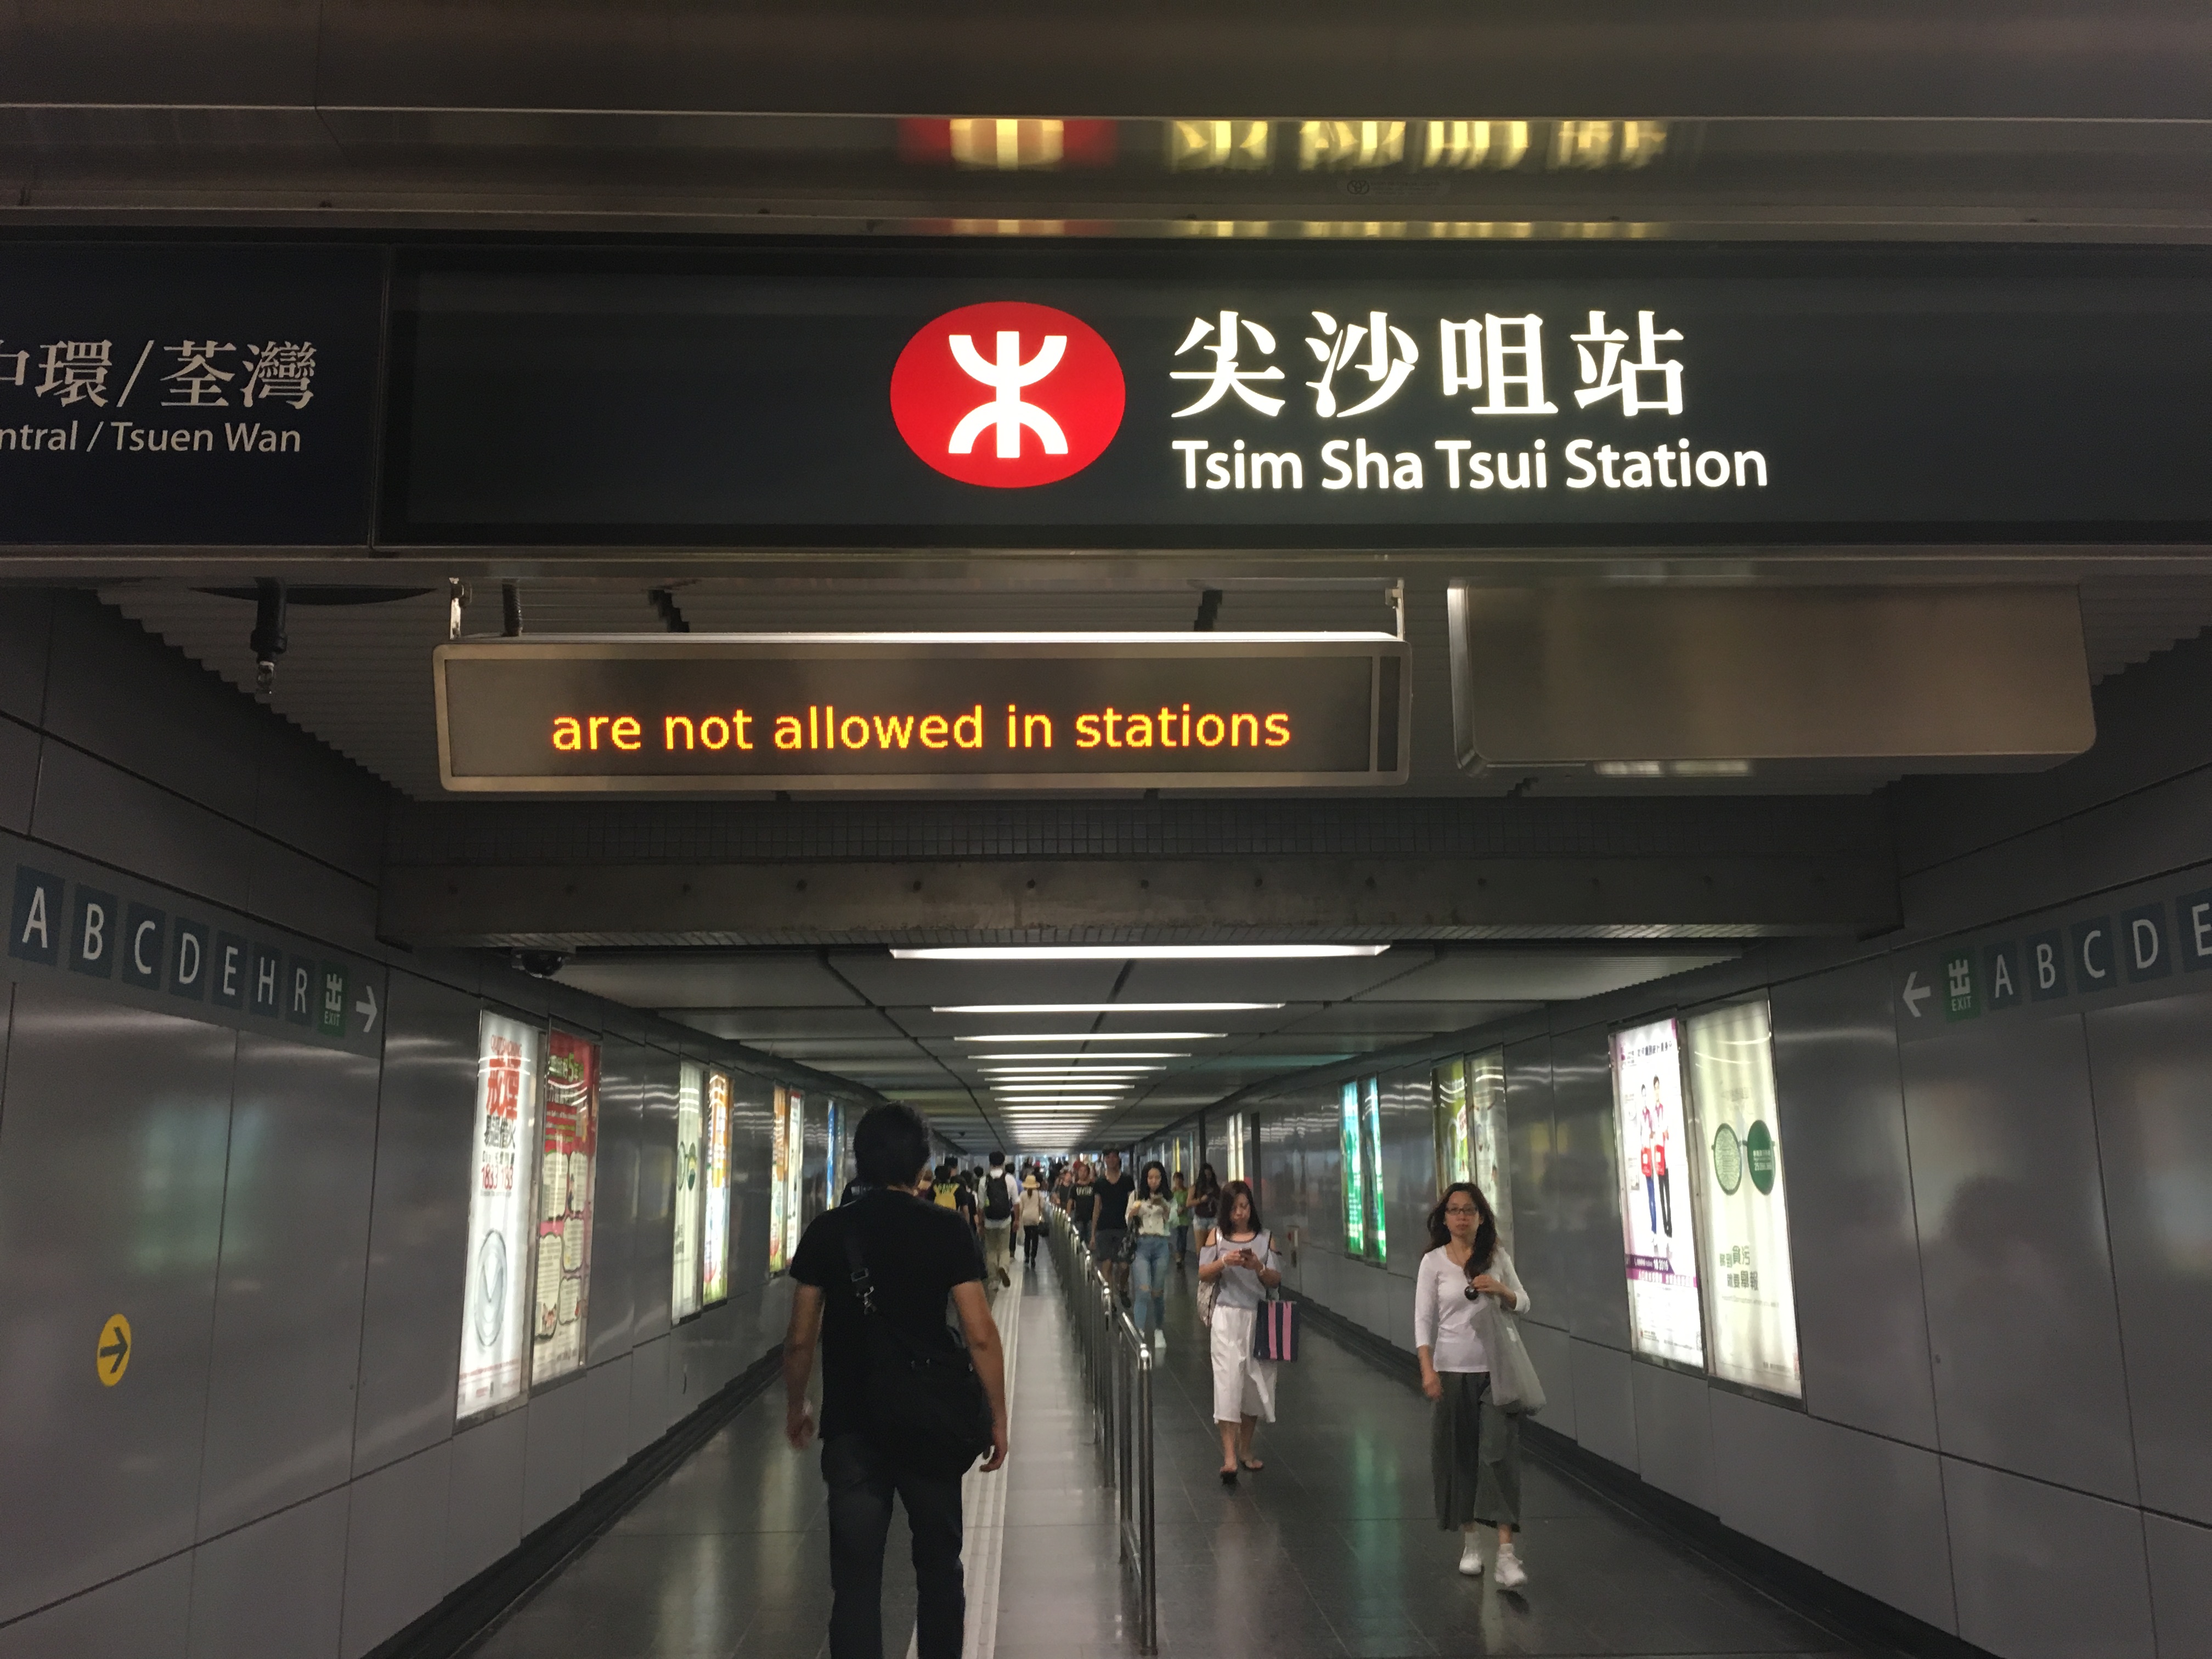 尖沙咀:香港九龙半岛南端的繁华地标与汉字咀的双重解读